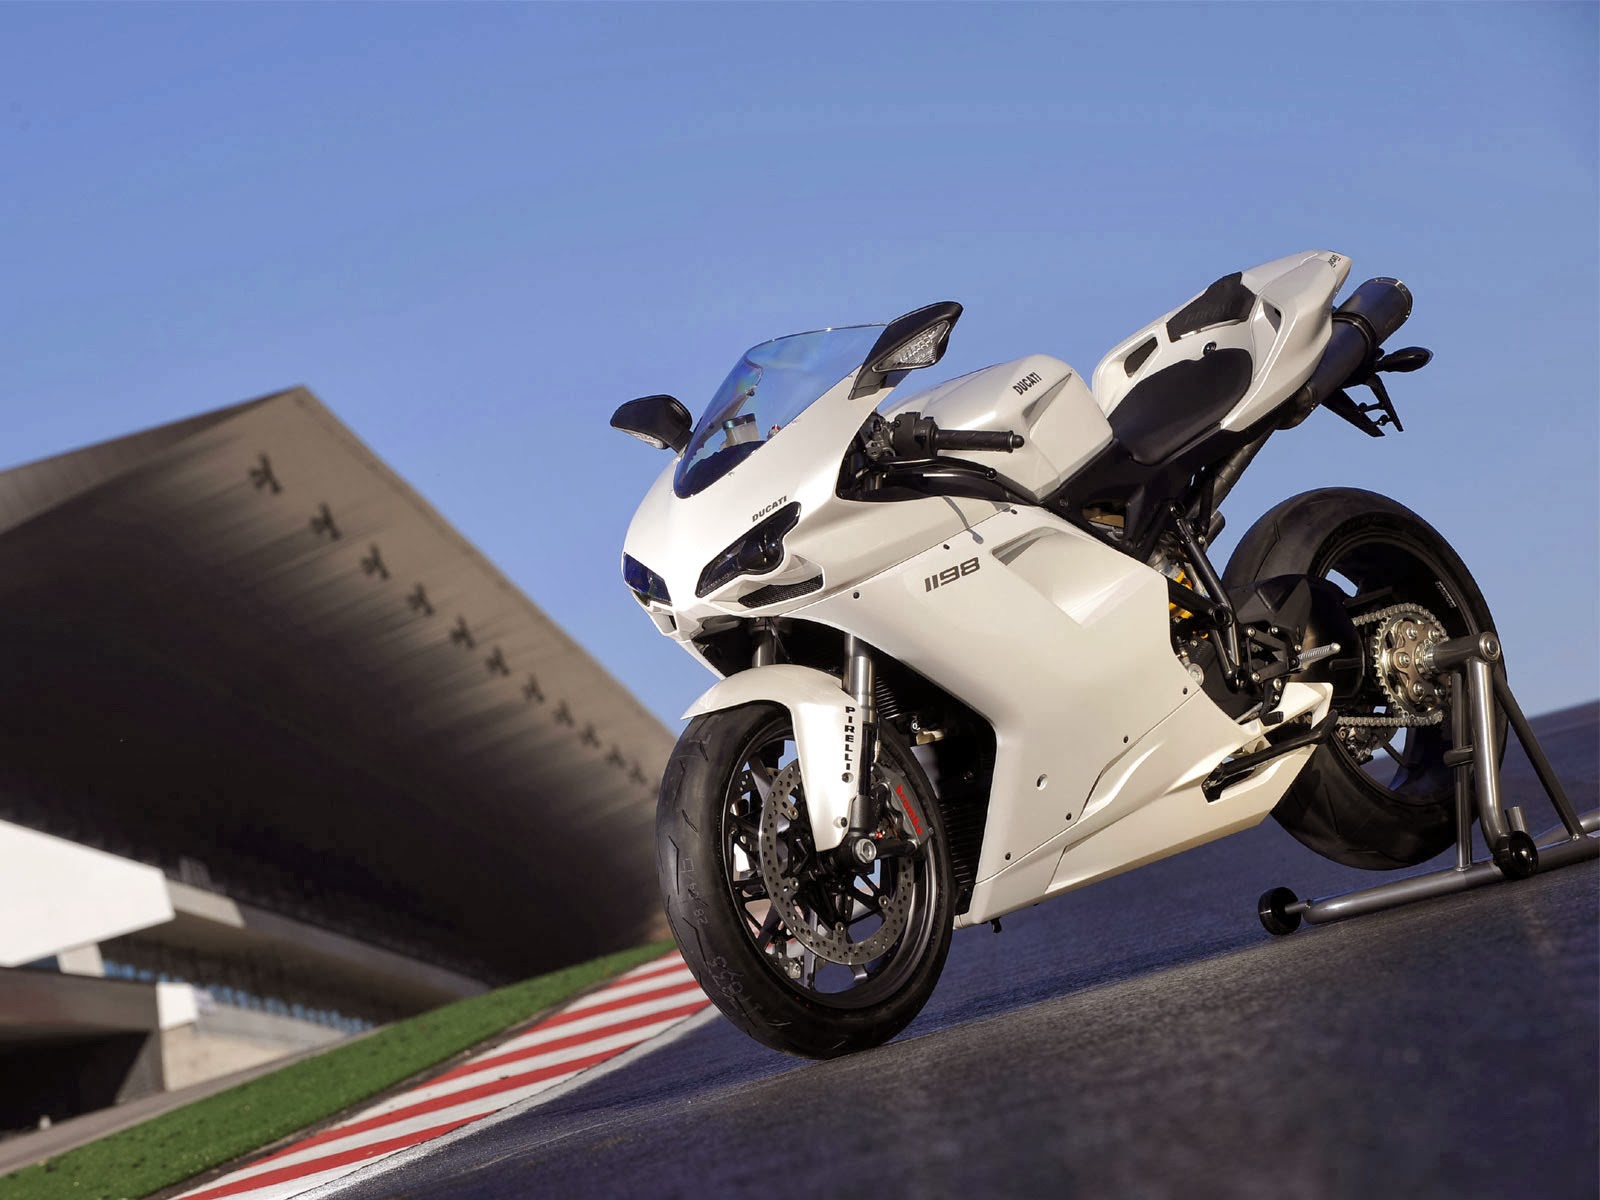 Koleksi Gambar Sepeda Motor Sport Ducati Terlengkap Codot Modifikasi